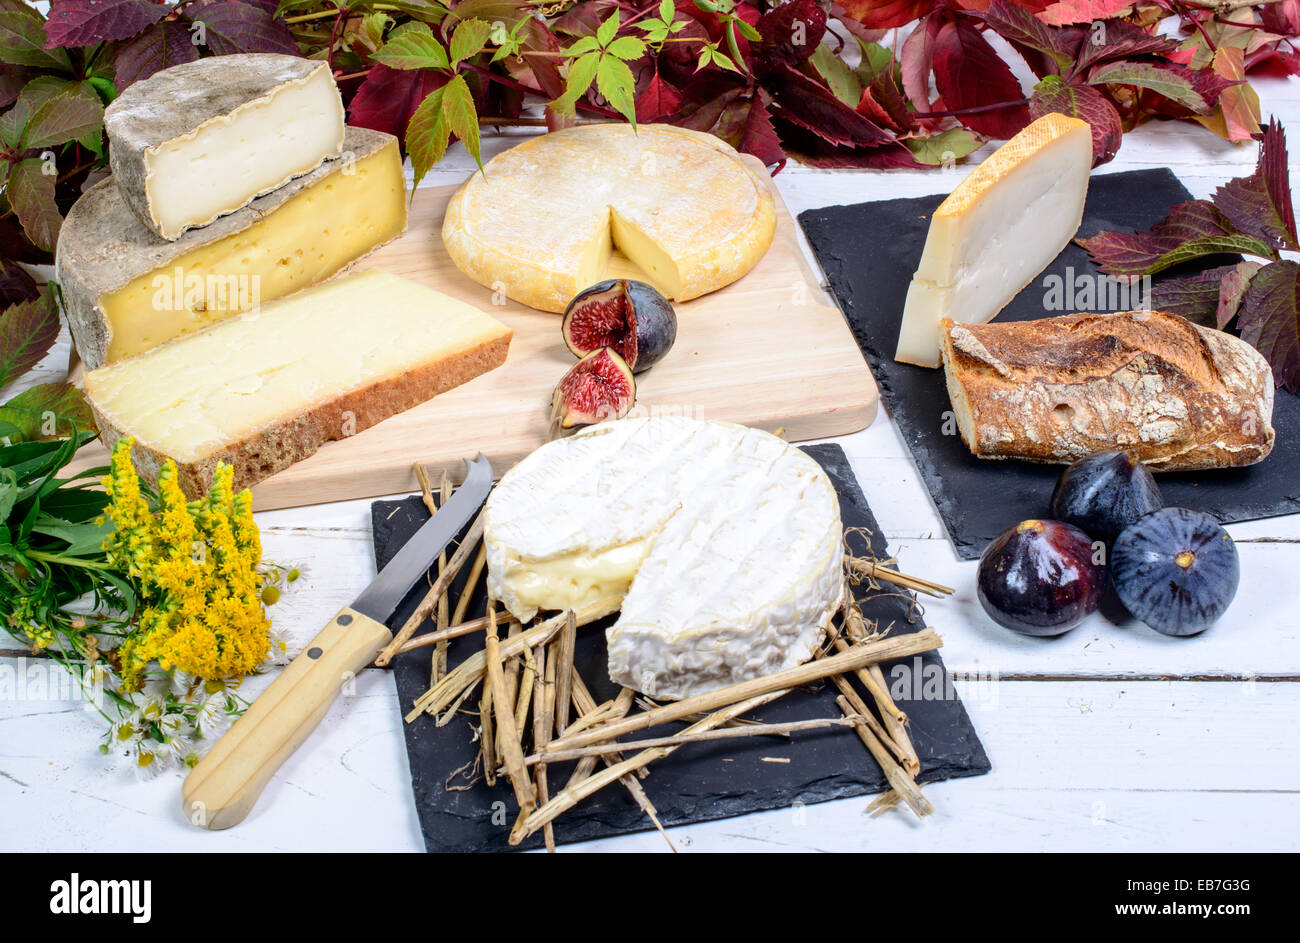 Le Camembert de Normandie avec différents fromages français Banque D'Images